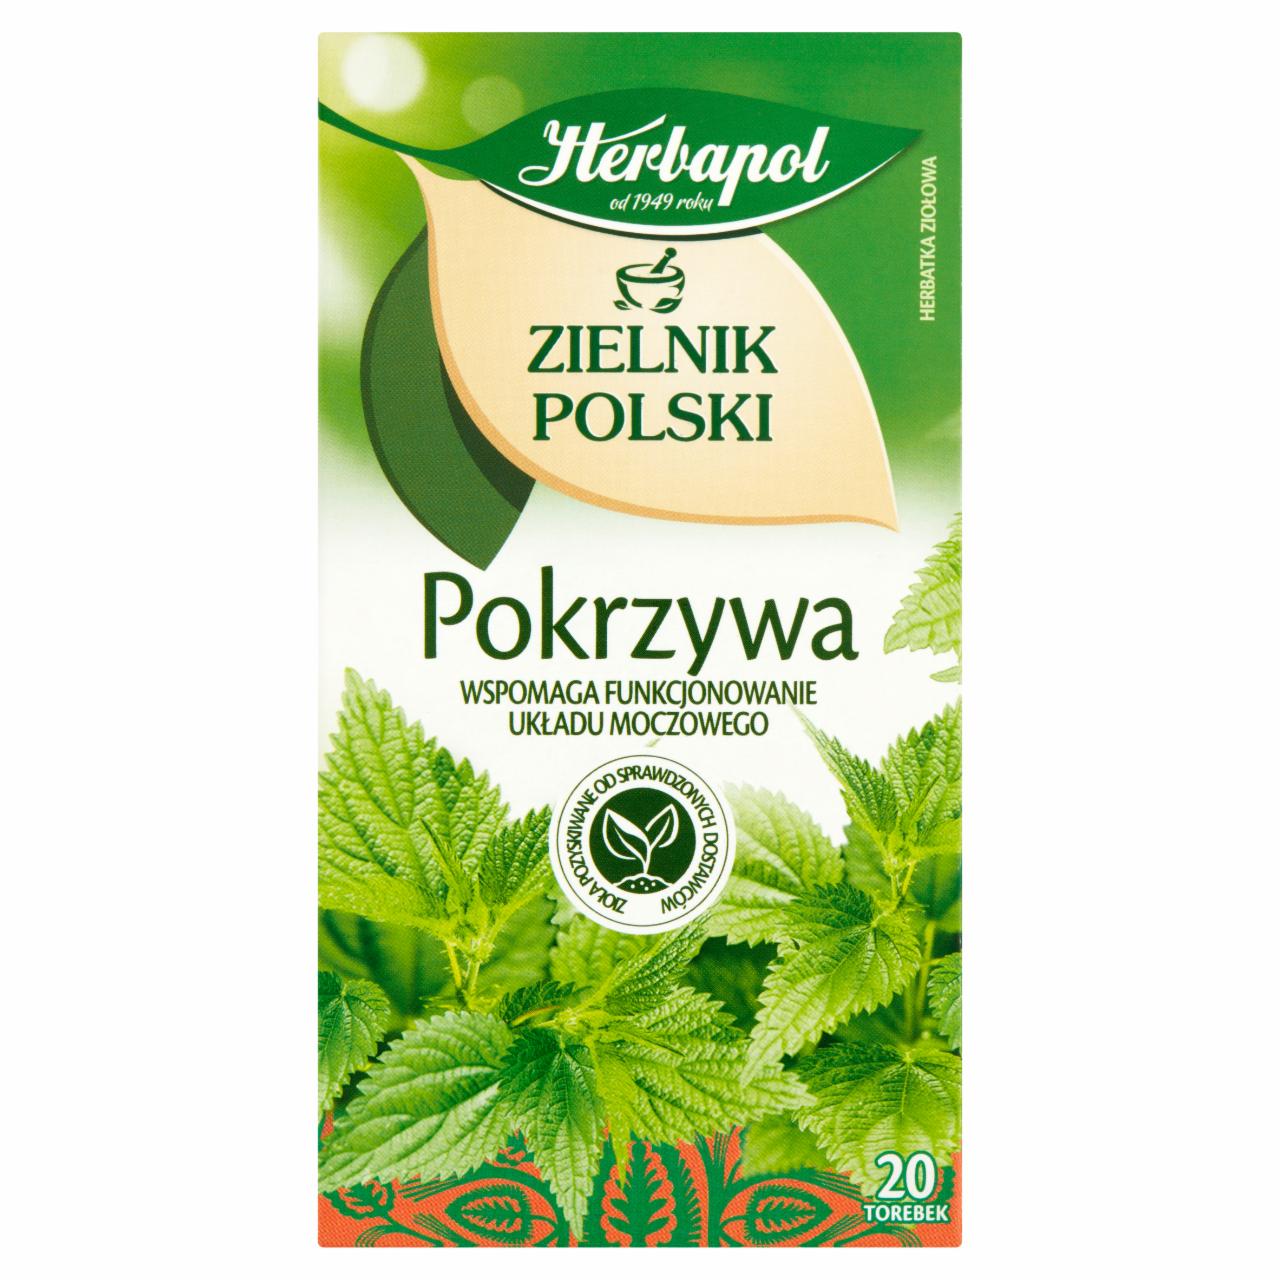 Zdjęcia - Herbapol Zielnik Polski Herbatka ziołowa pokrzywa 30 g (20 x 1,5 g)